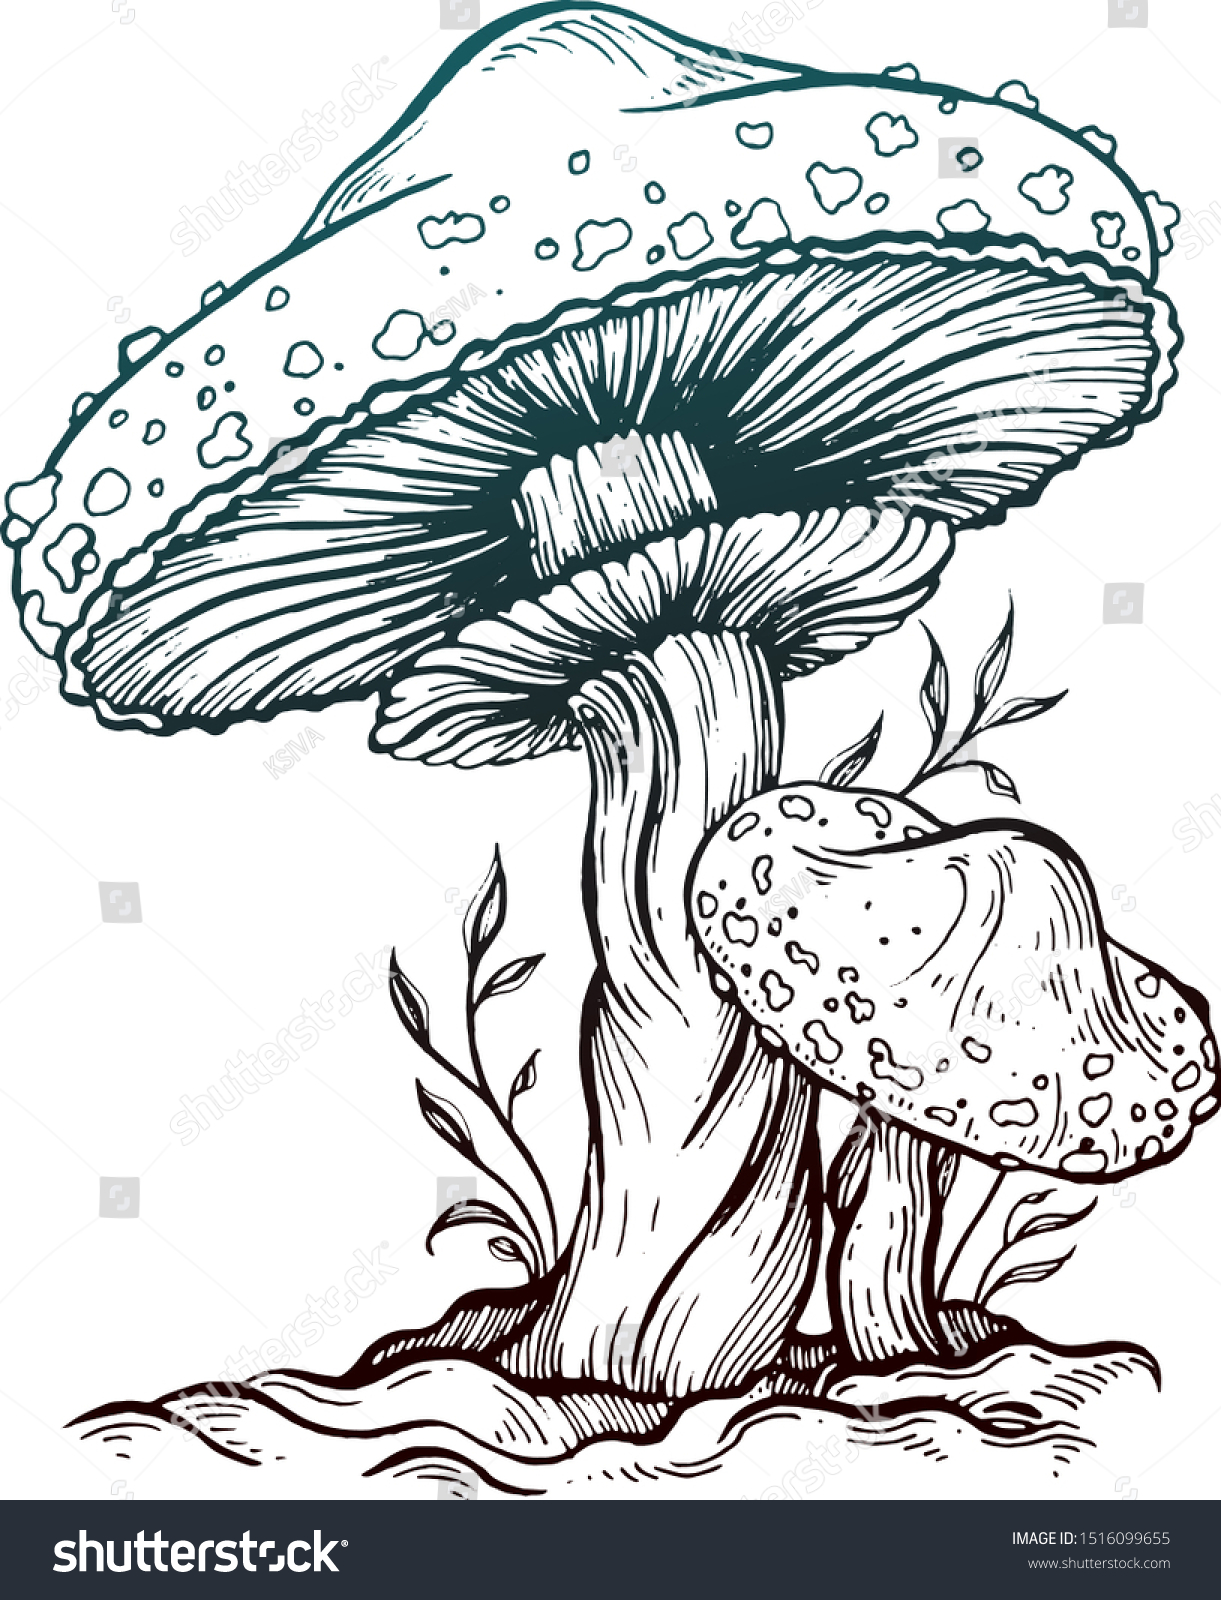 Mushroom Drawing Ink Vector Illustration Stock Vector (Royalty Free ...